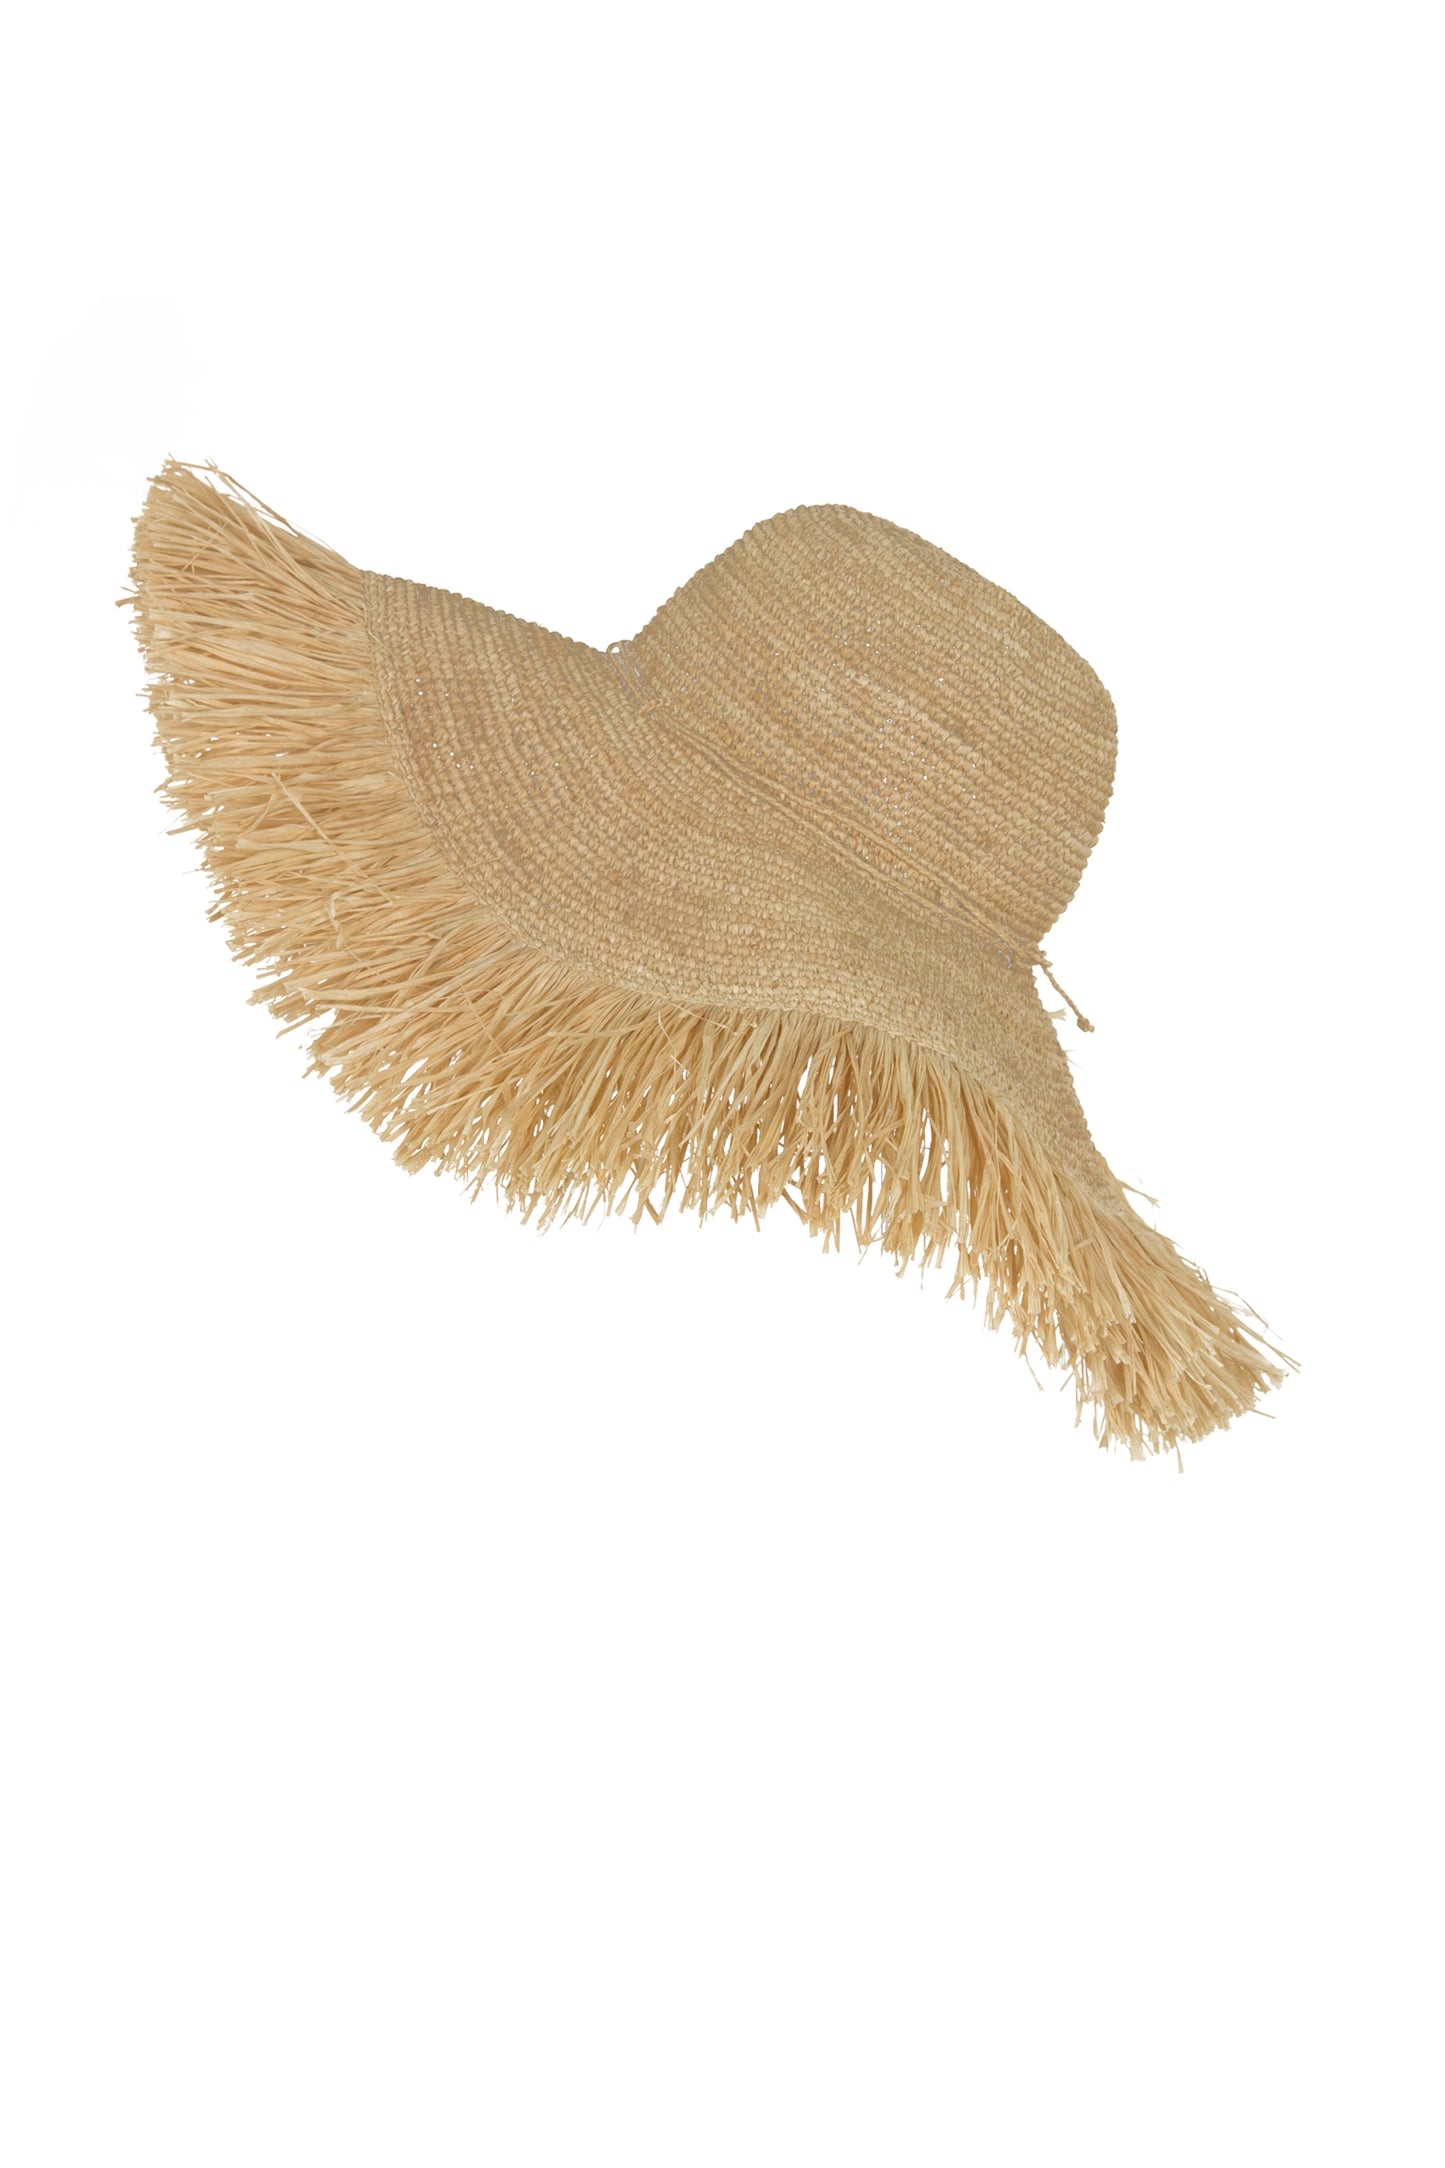 Coconut Hat Floppy Wide Fringe Natural